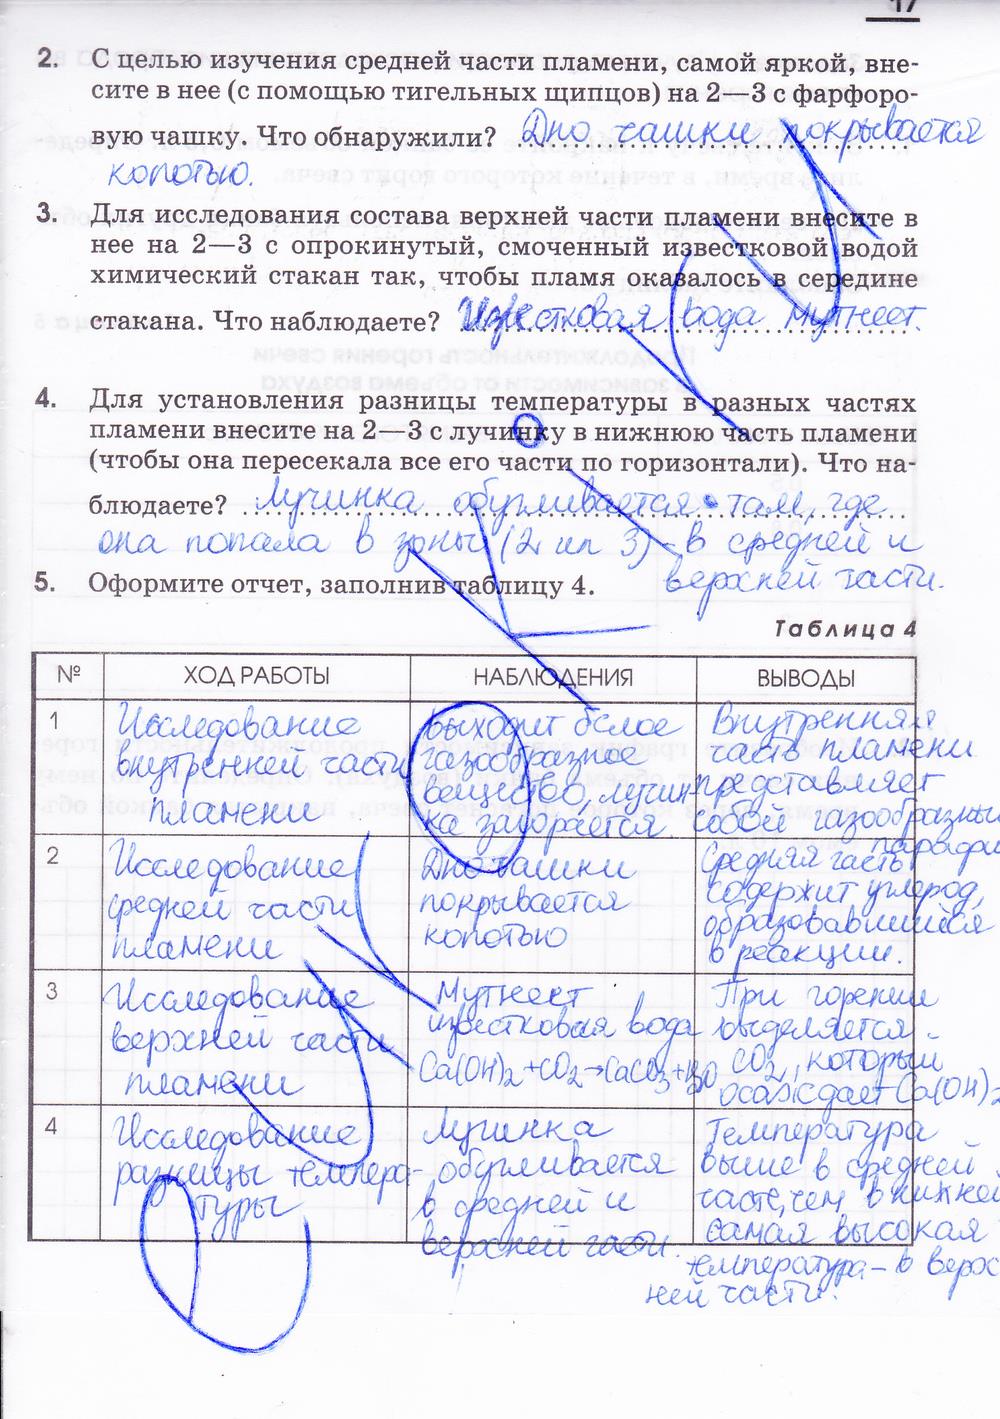 гдз 7 класс рабочая тетрадь страница 17 химия Габриелян, Шипарева